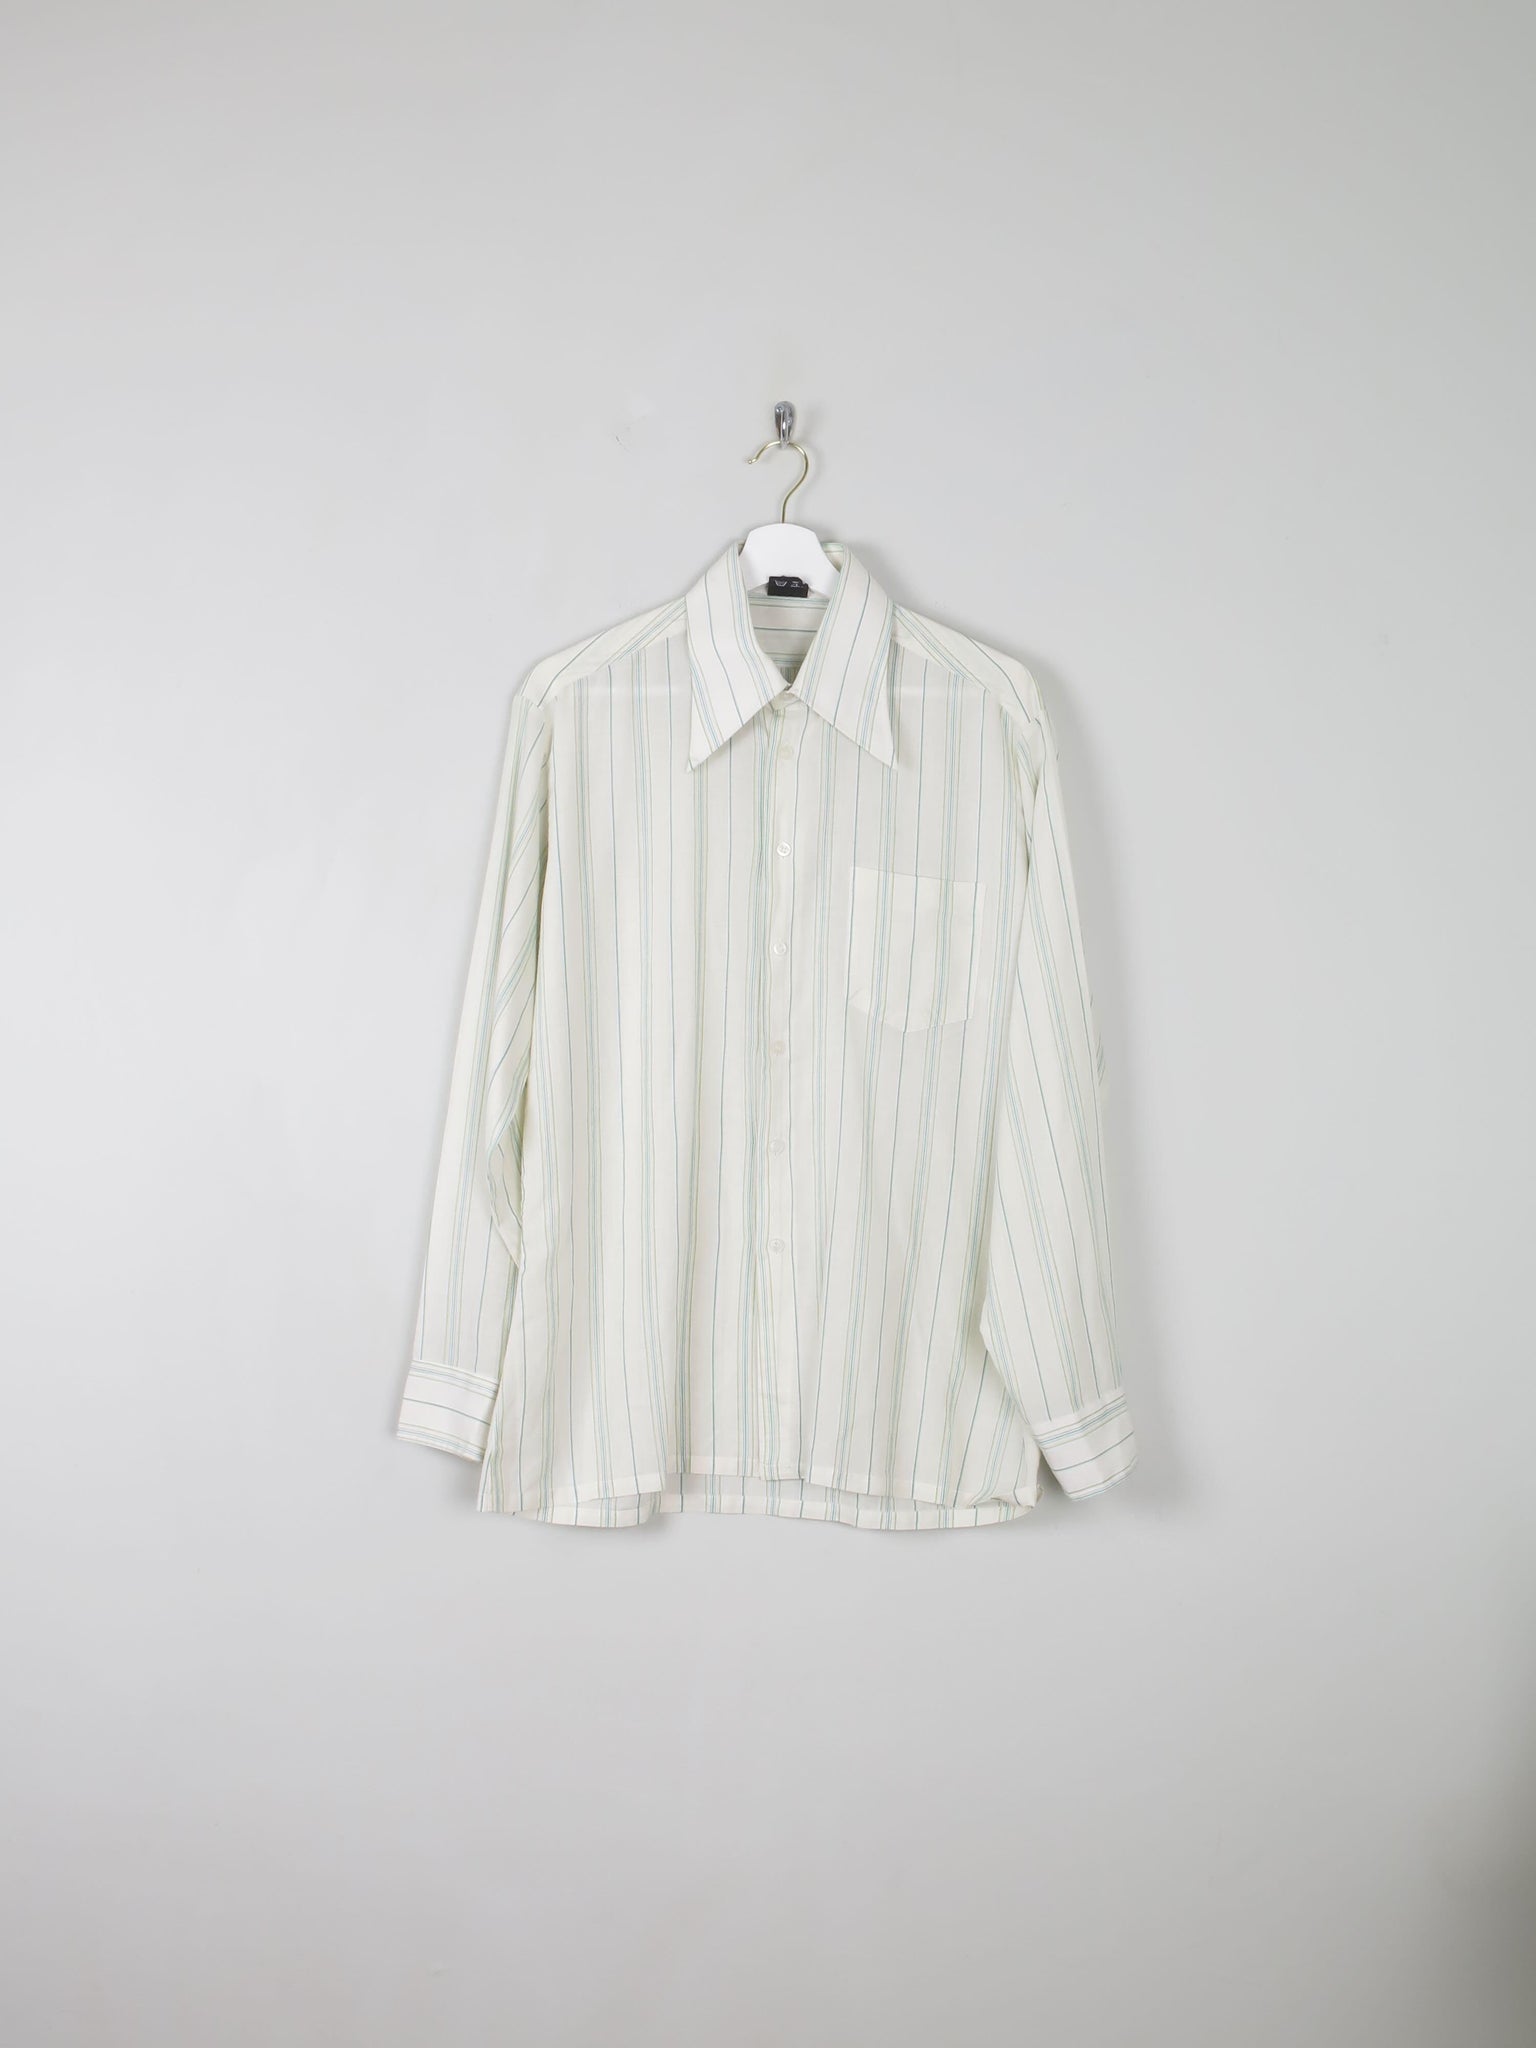 Men's Striped 1970s Vintage Shirt M - The Harlequin